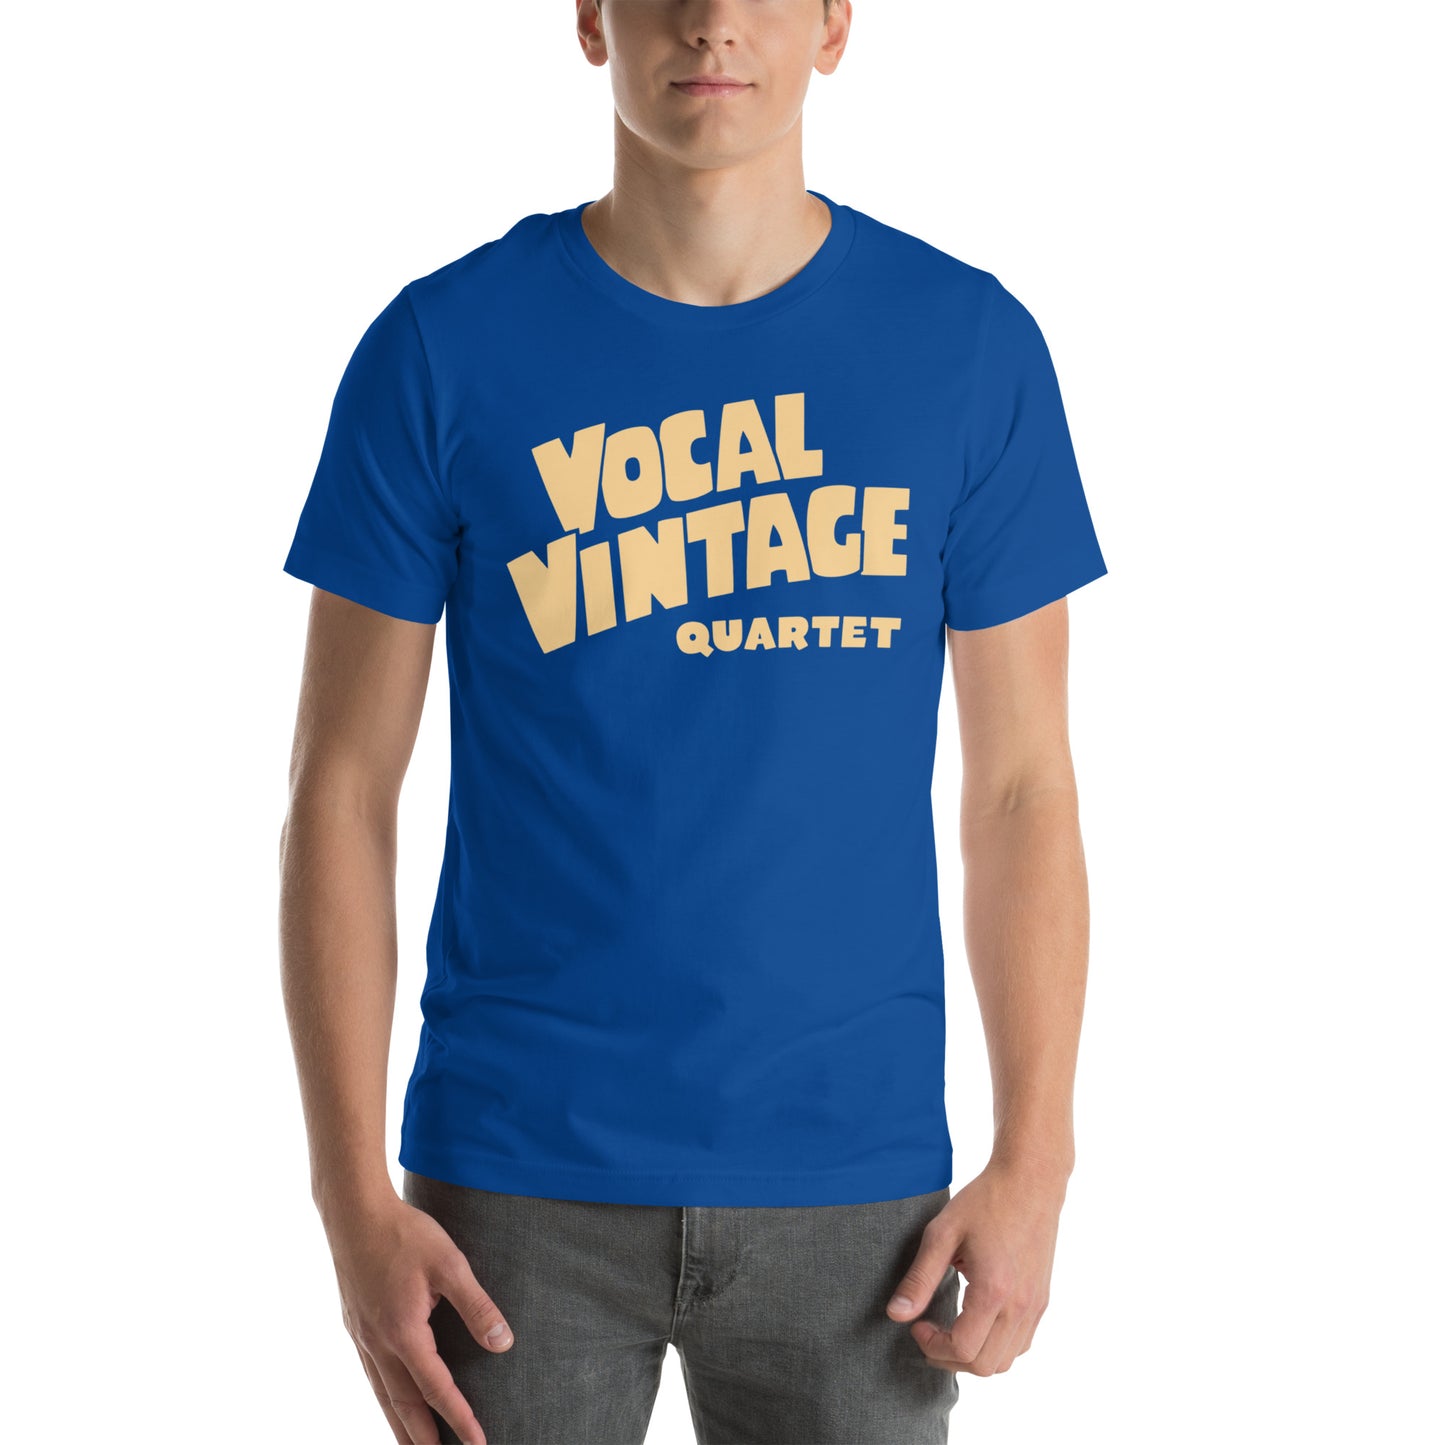 Vocal Vintage Quartet Unisex t-shirt